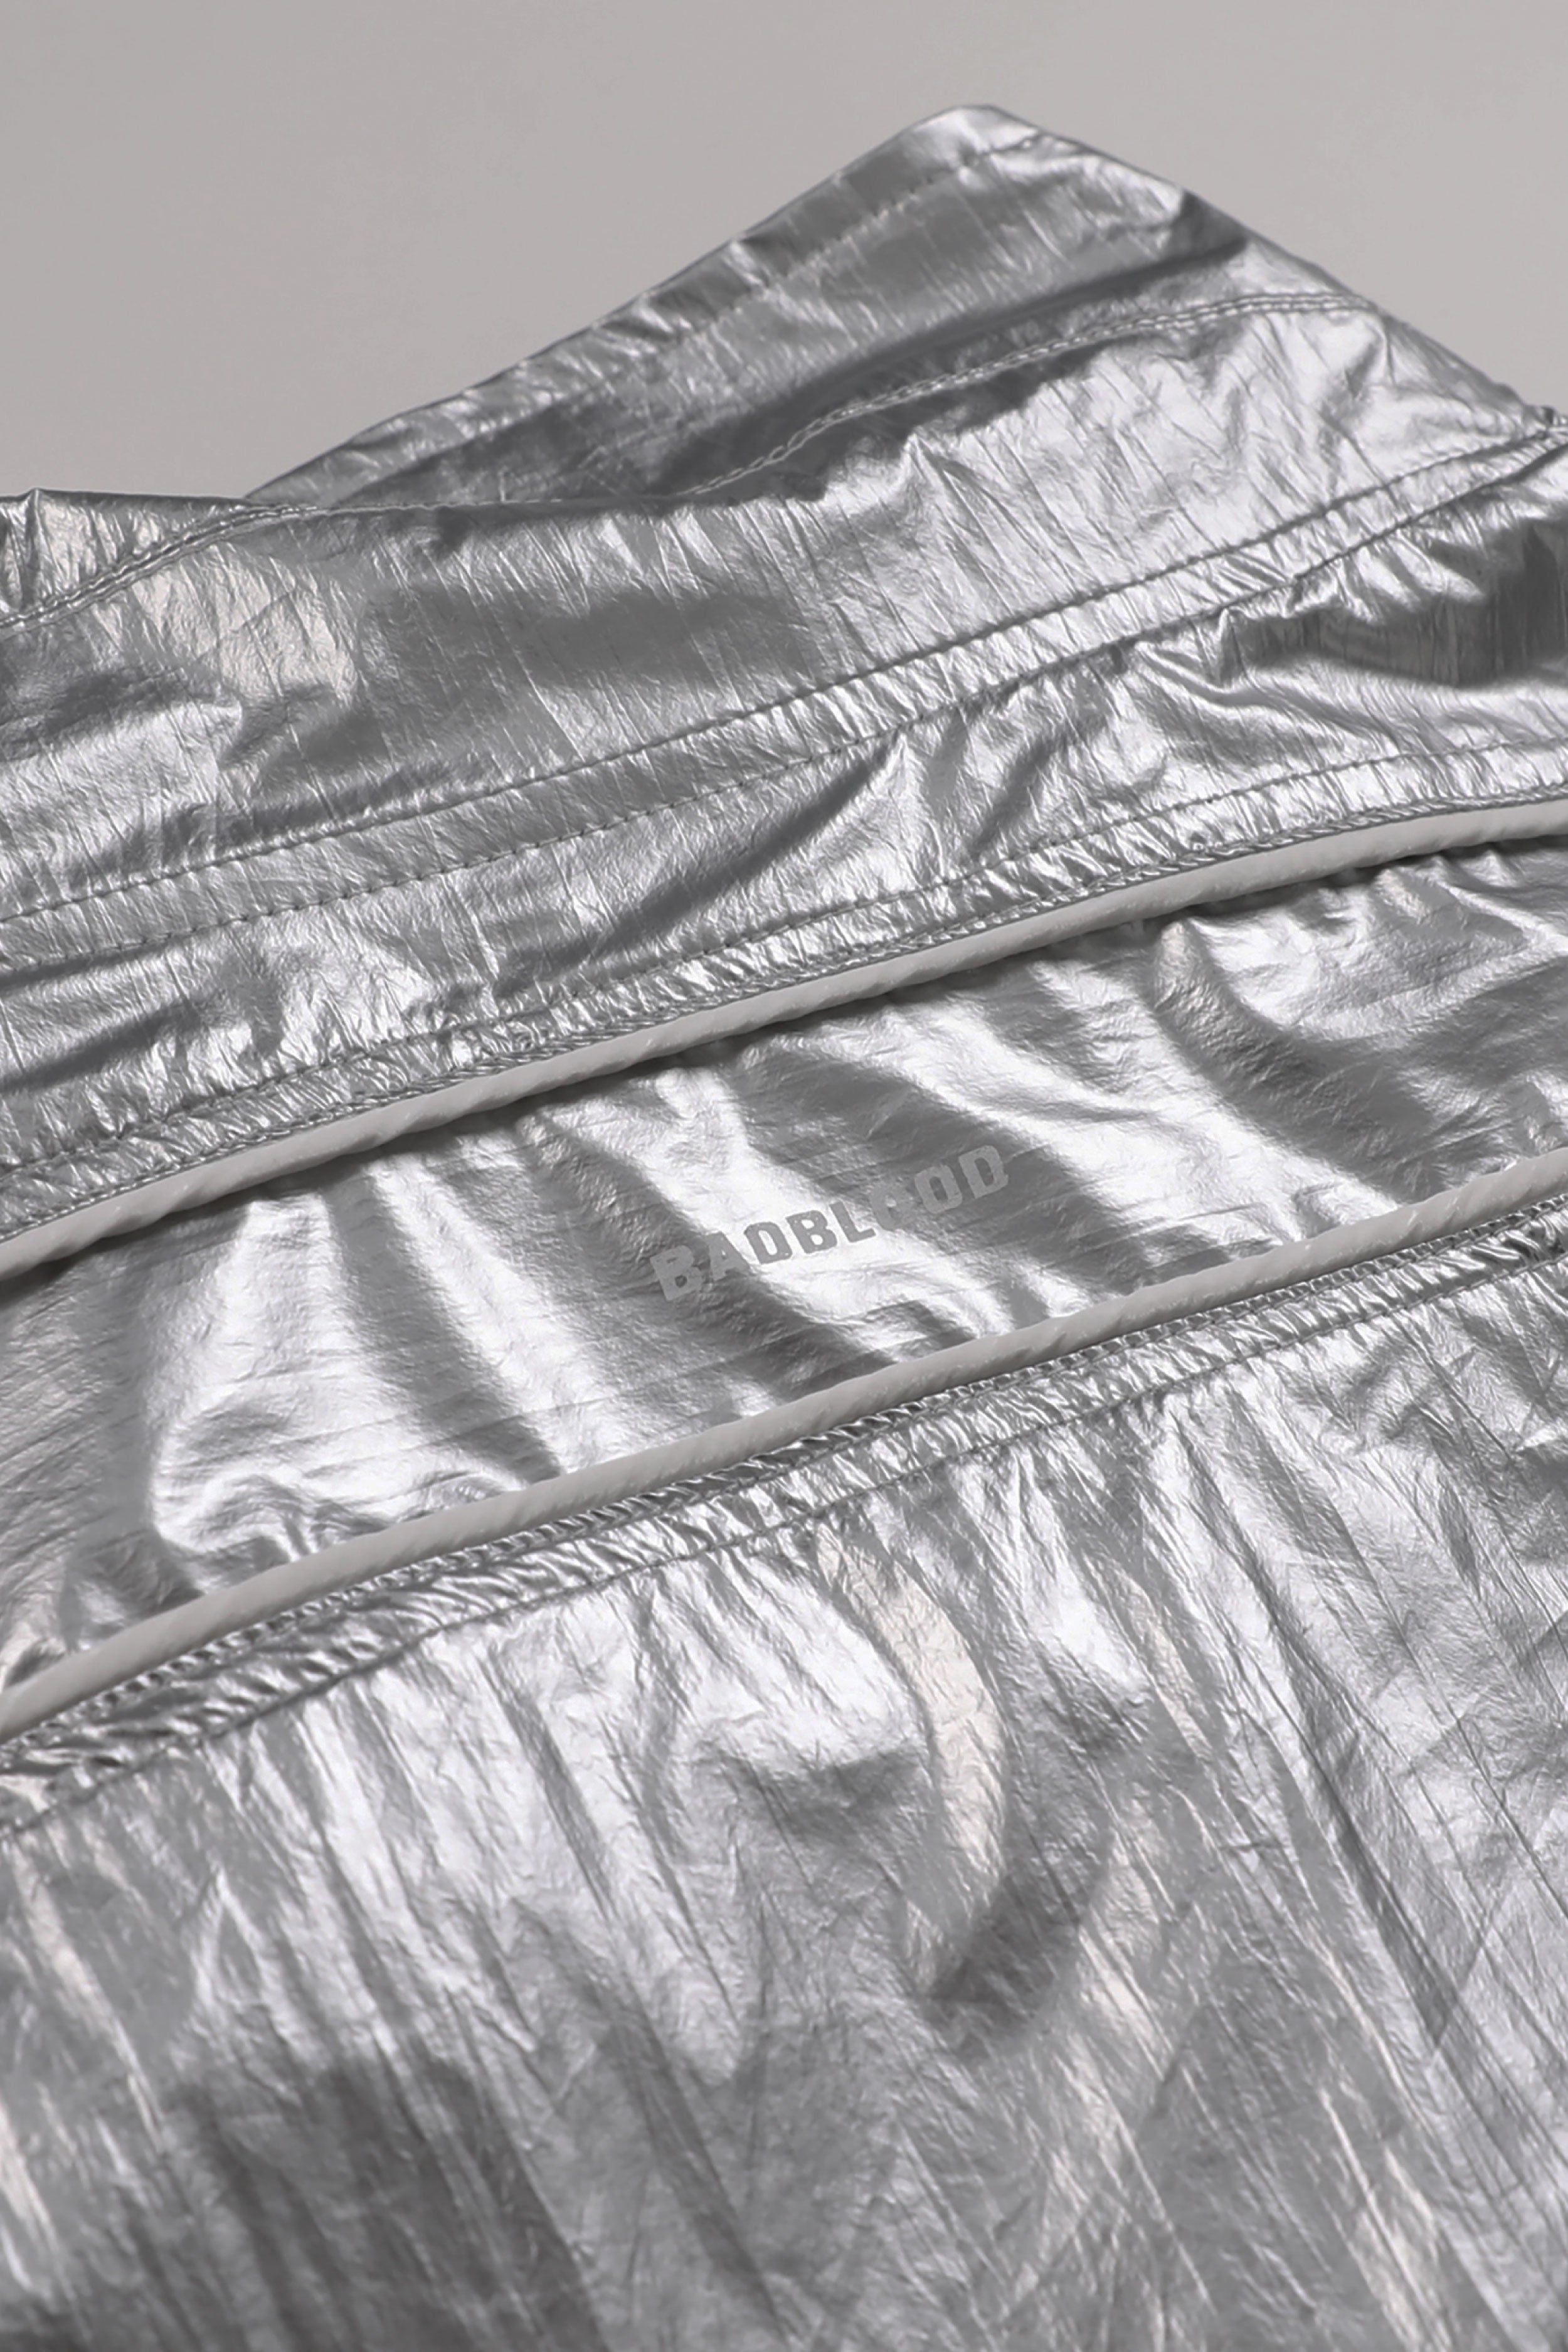 Badblood Spiral Nylon Track Jacket Large Fit Silver